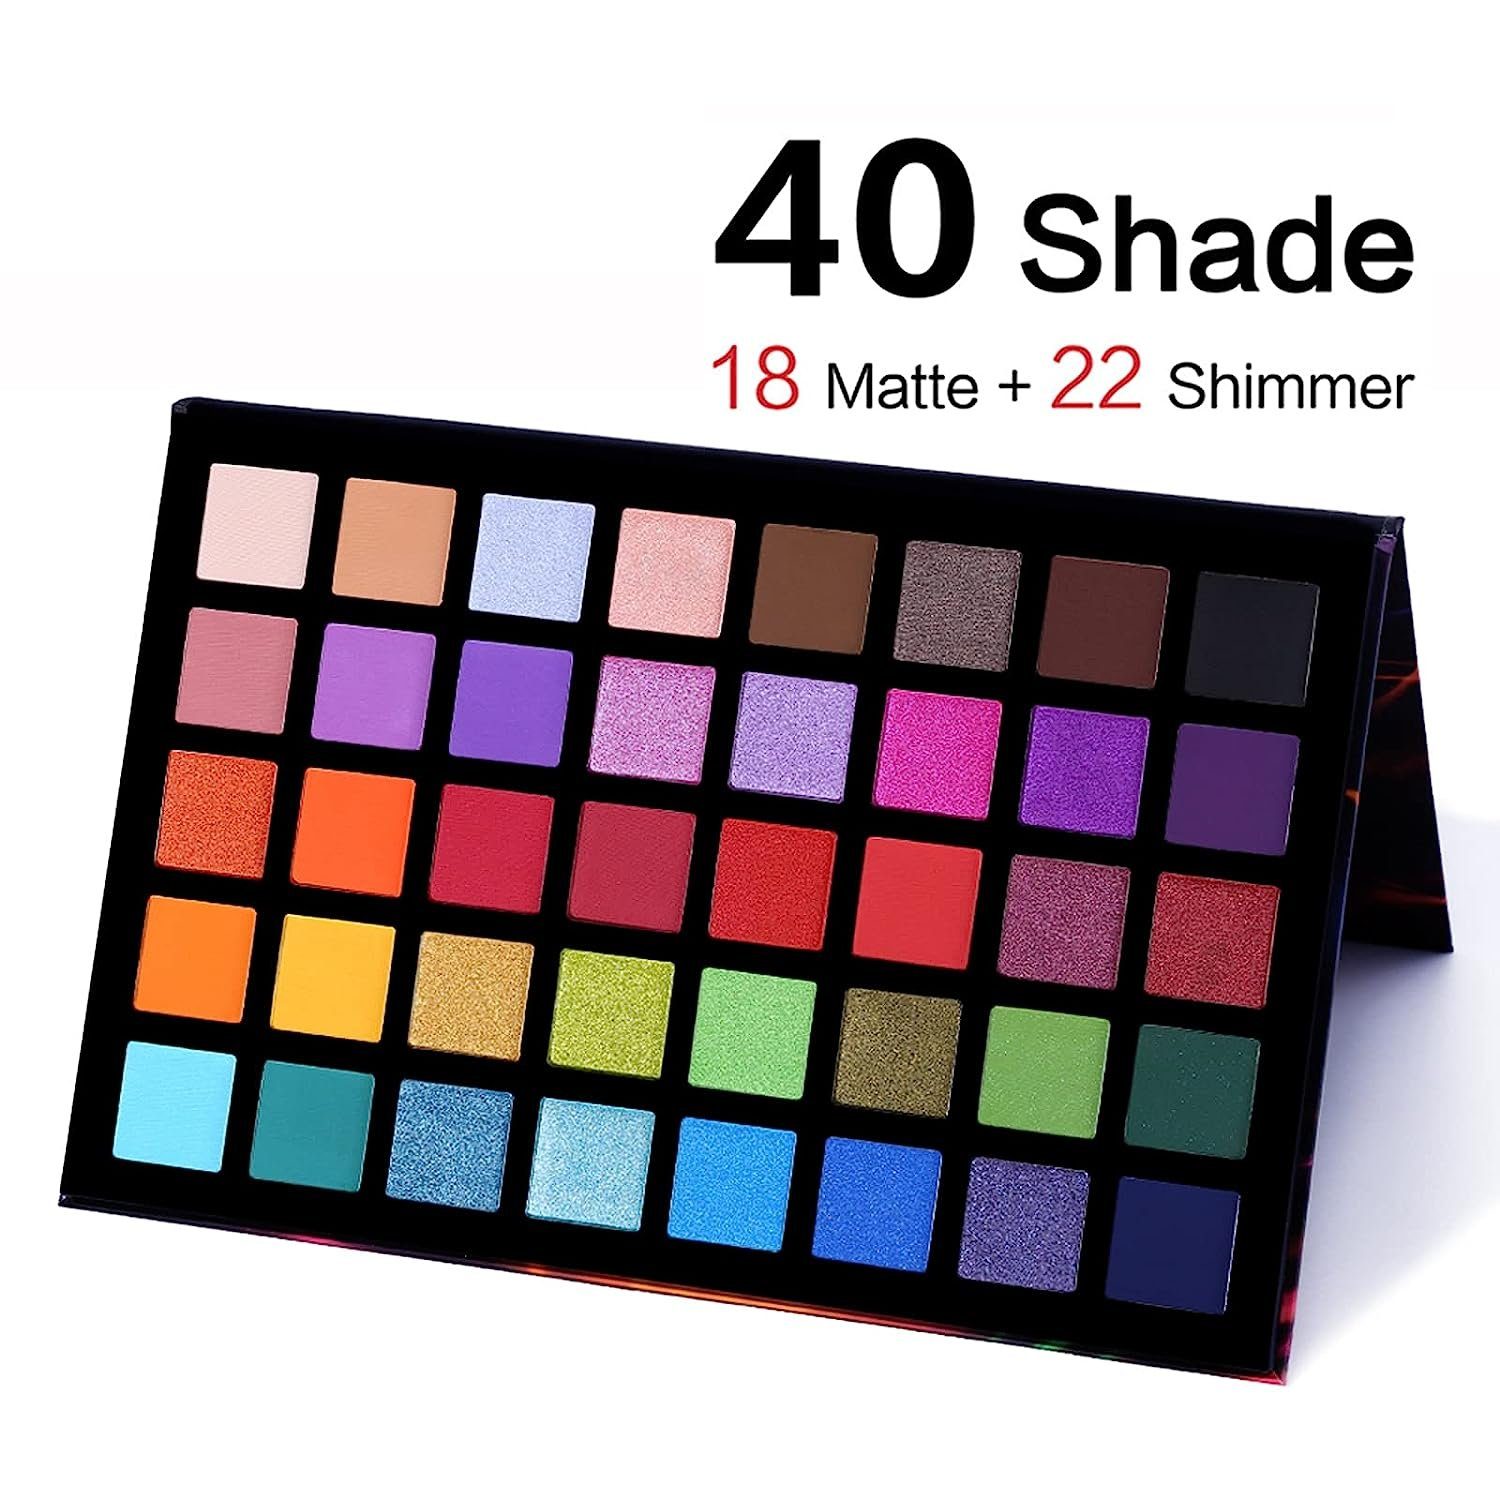 Schimmernde Haiaveng Lidschatten 40 Matt Lidschatten-Palette Palette Farben, Spotlight Eyeshadow mit Palette und